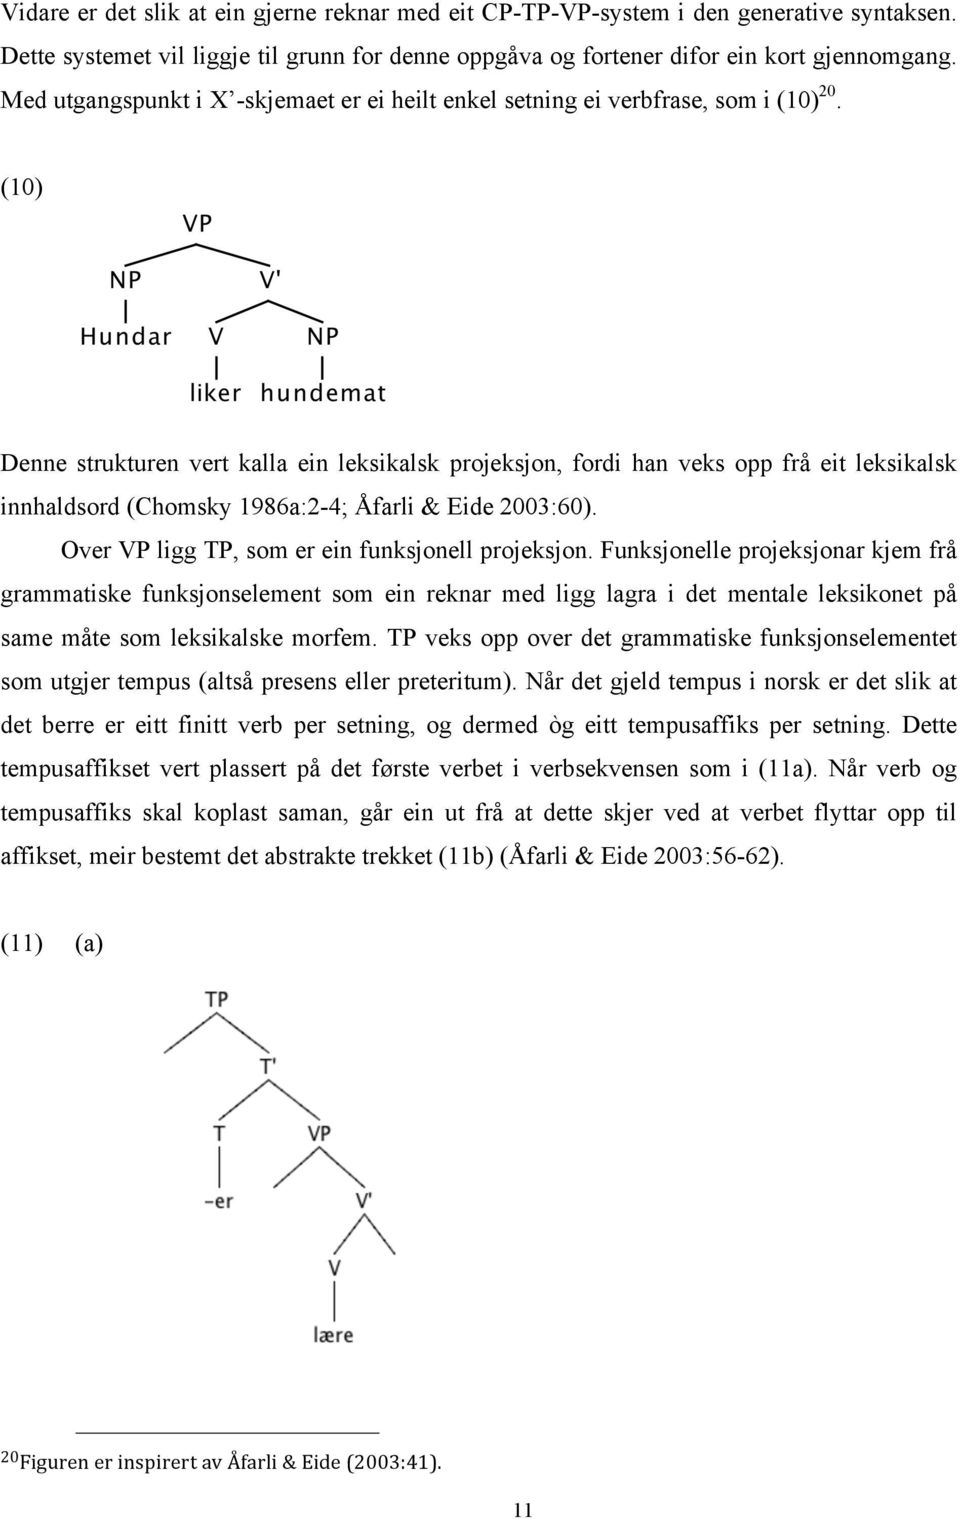 (10) Denne strukturen vert kalla ein leksikalsk projeksjon, fordi han veks opp frå eit leksikalsk innhaldsord (Chomsky 1986a:2-4; Åfarli & Eide 2003:60).